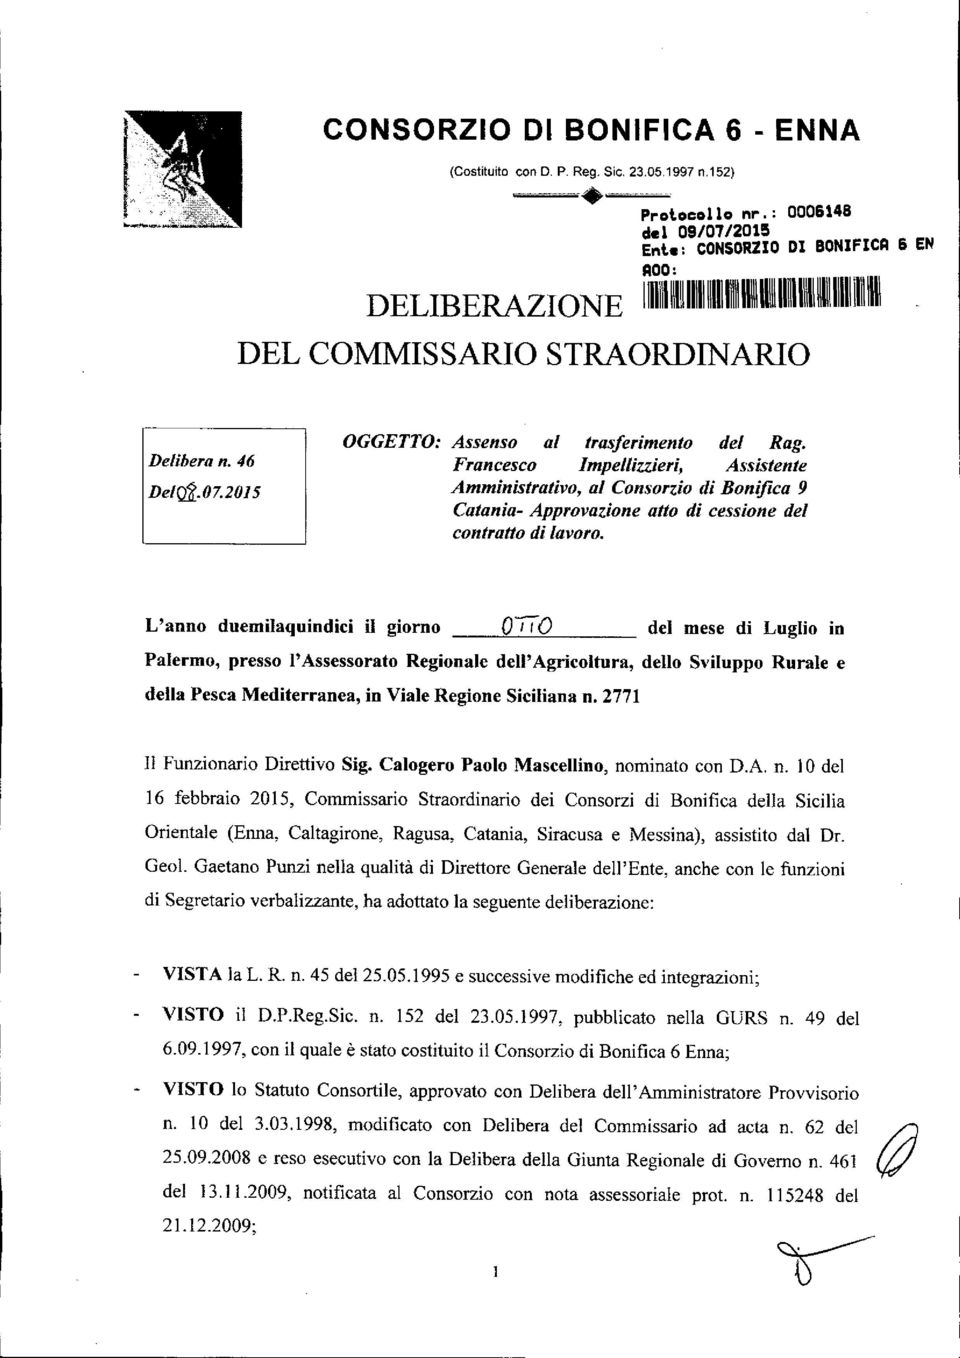 2015 OGGETTO: Assenso al trasferimento del Rag. Francesco Impellizzieri, Assistente Amministrativo, al Consorzio di Bonifica 9 Catania- Approvazione atto di cessione del contratto di lavoro.